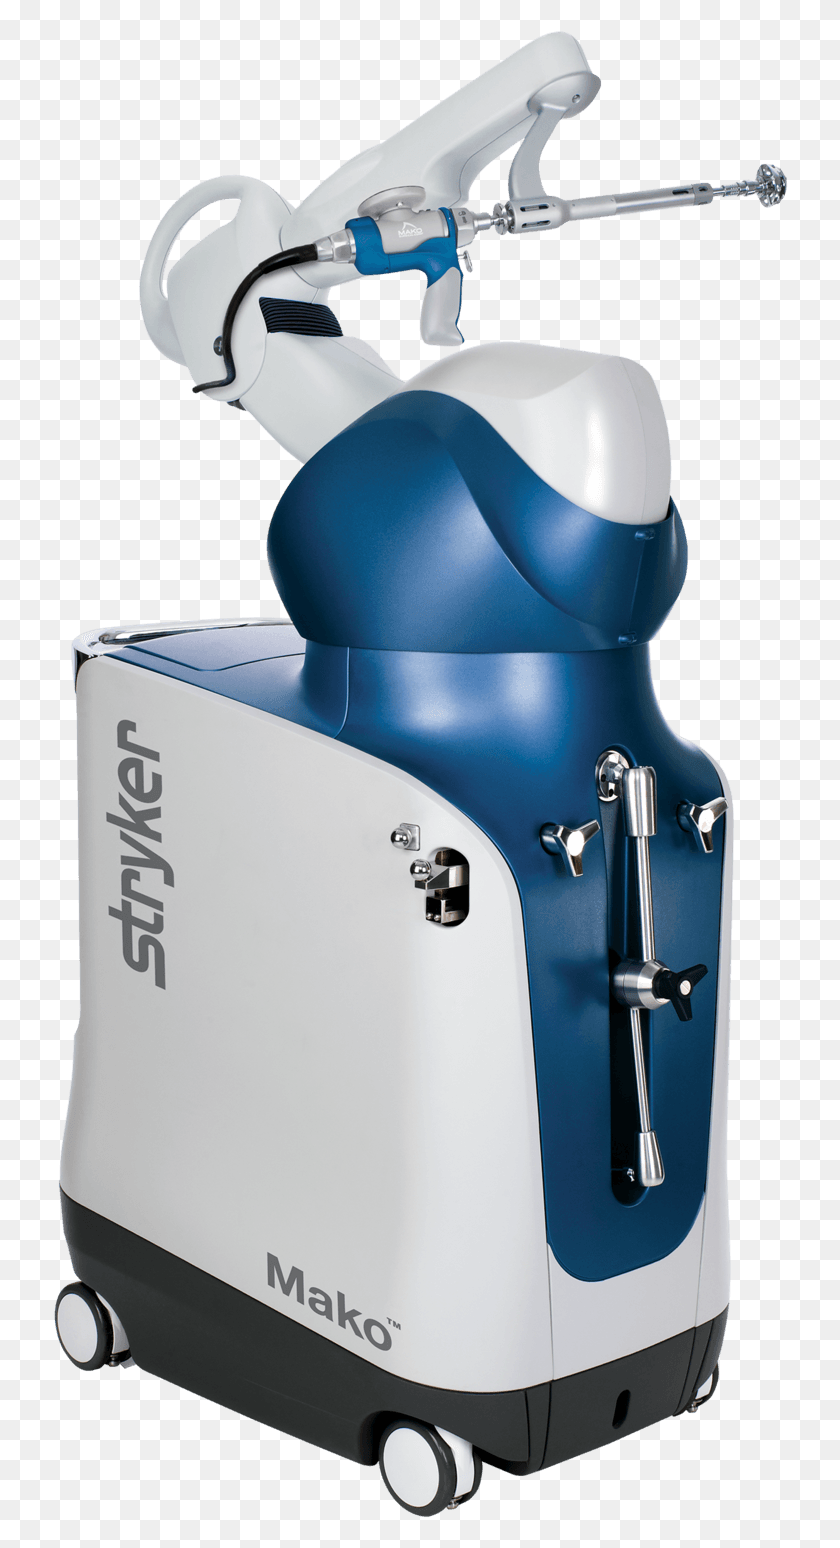 736x1488 Descargar Png El Cirujano Robot Nueva Tecnología De Reemplazo De Rodilla 2017, Electrodomésticos, Actividades De Ocio, Máquina Hd Png